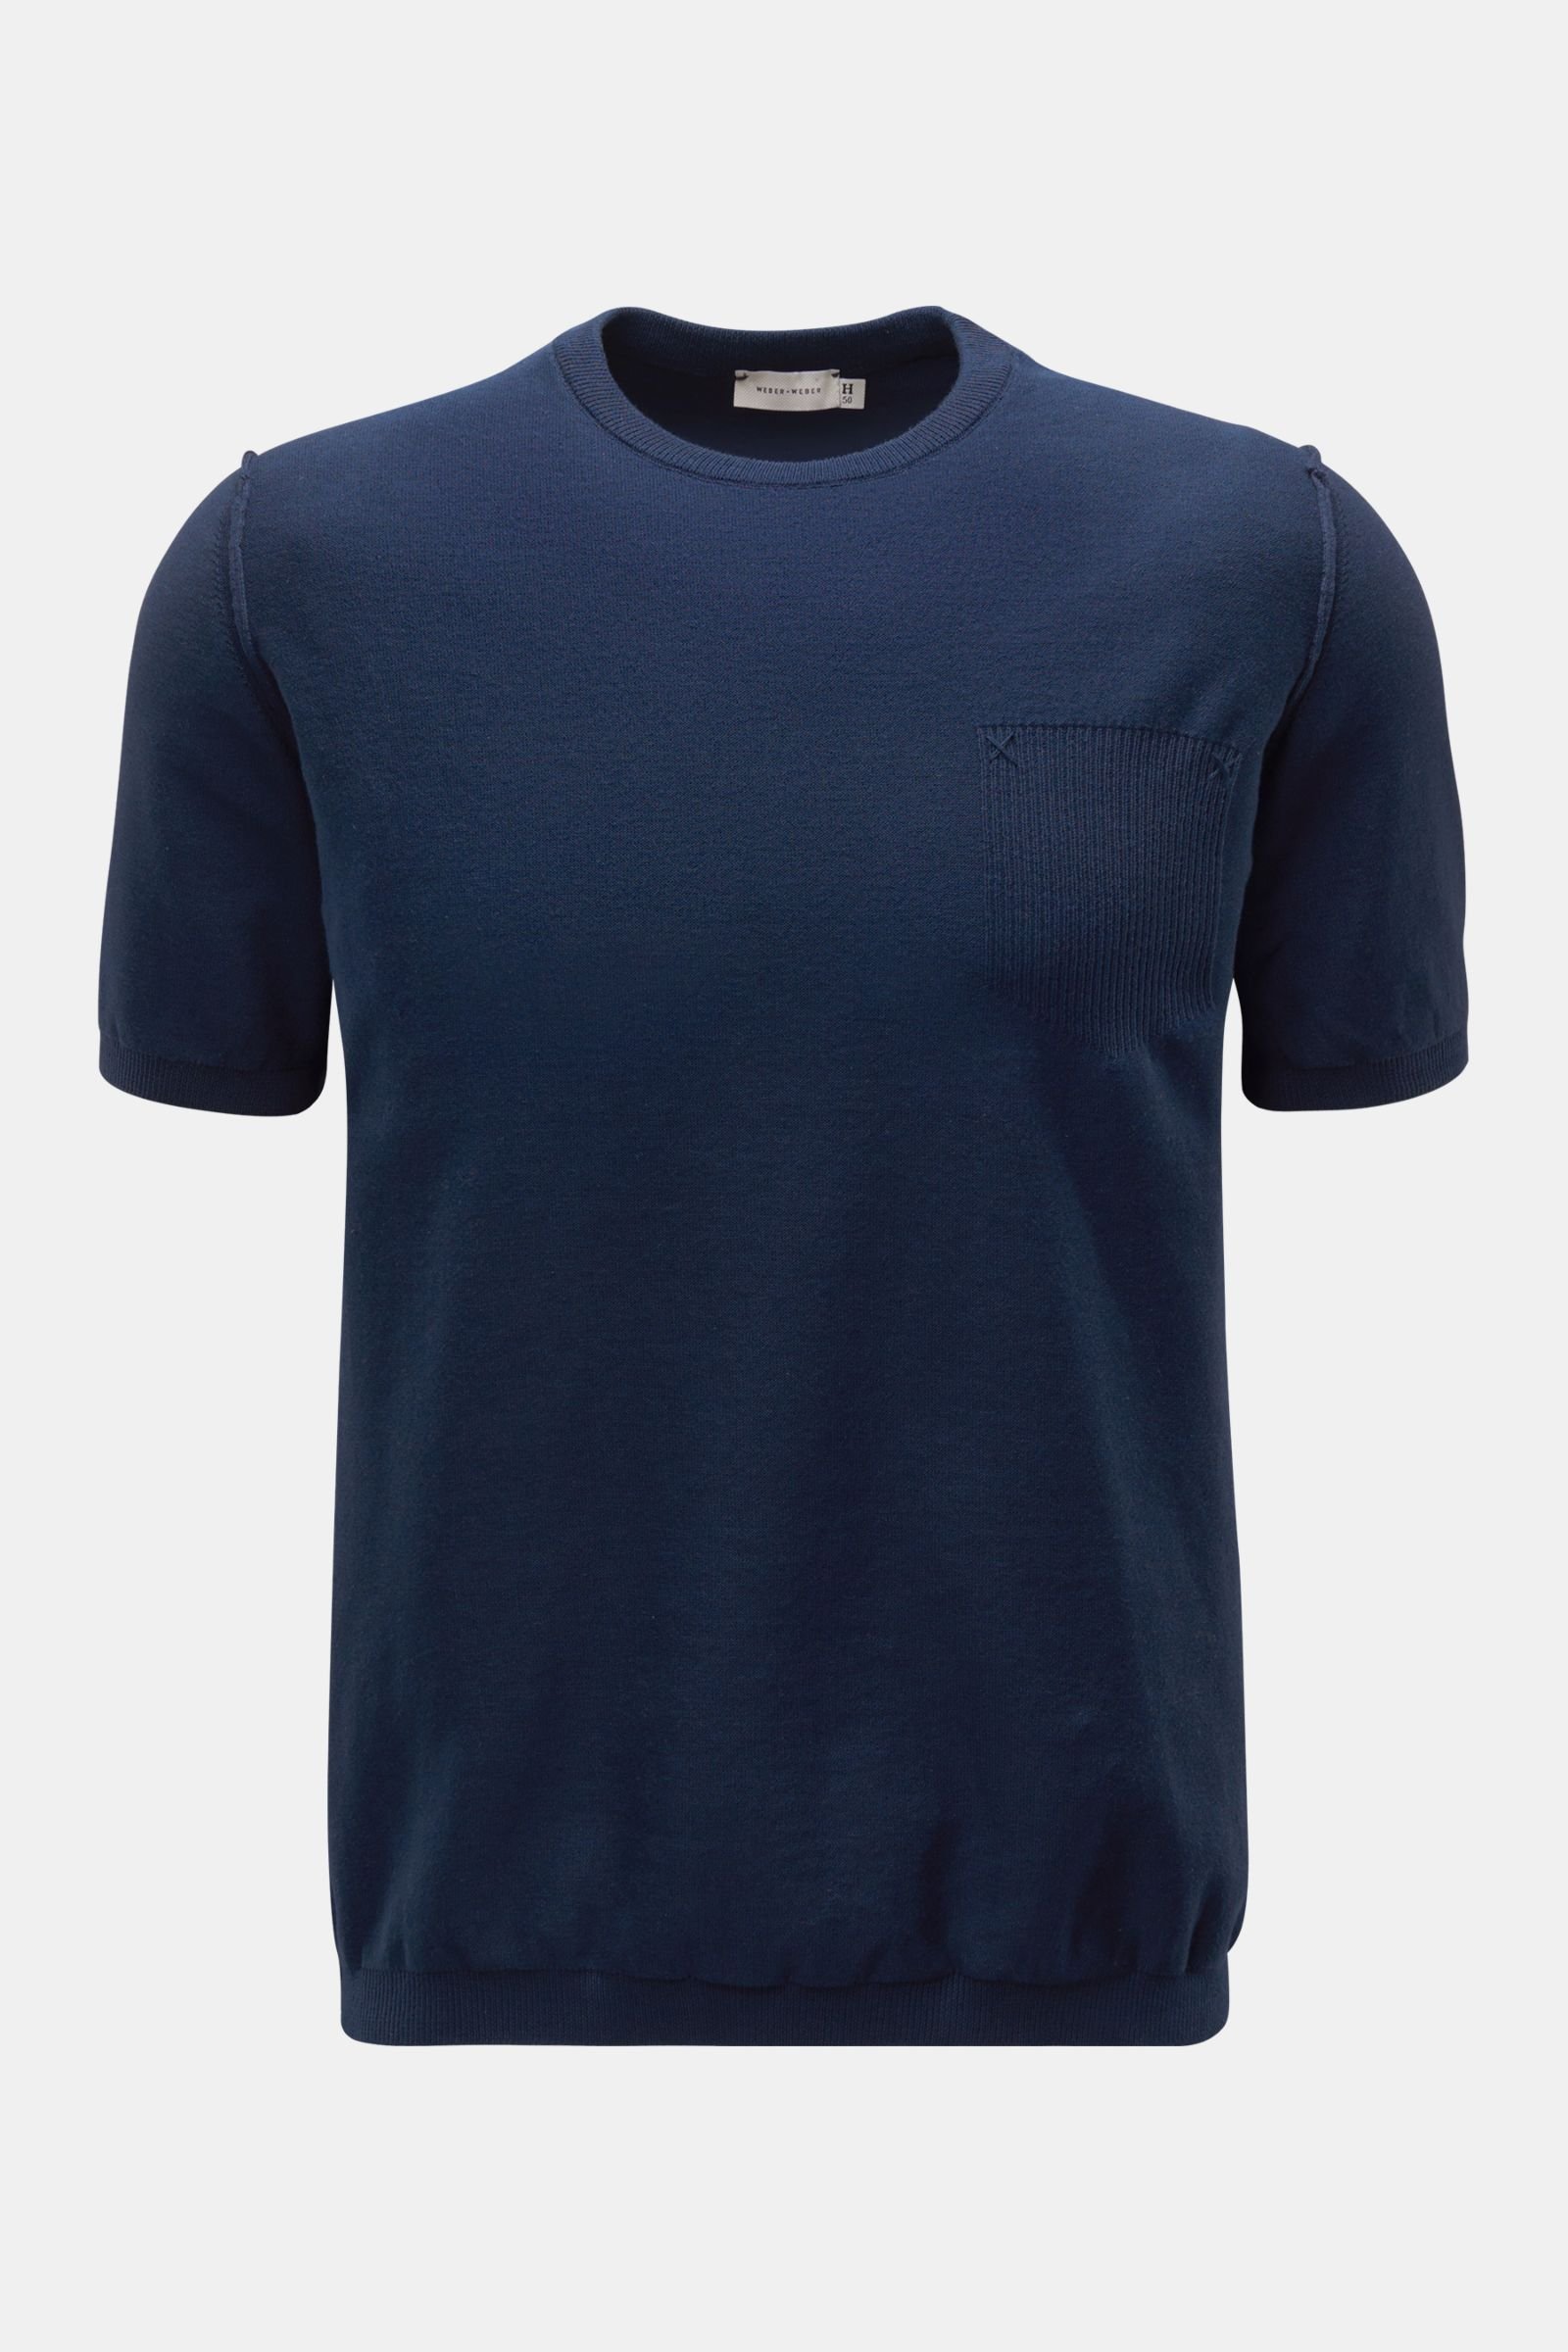 Kurzarm-Rundhalspullover 'Cotton Knit T-Shirt' navy